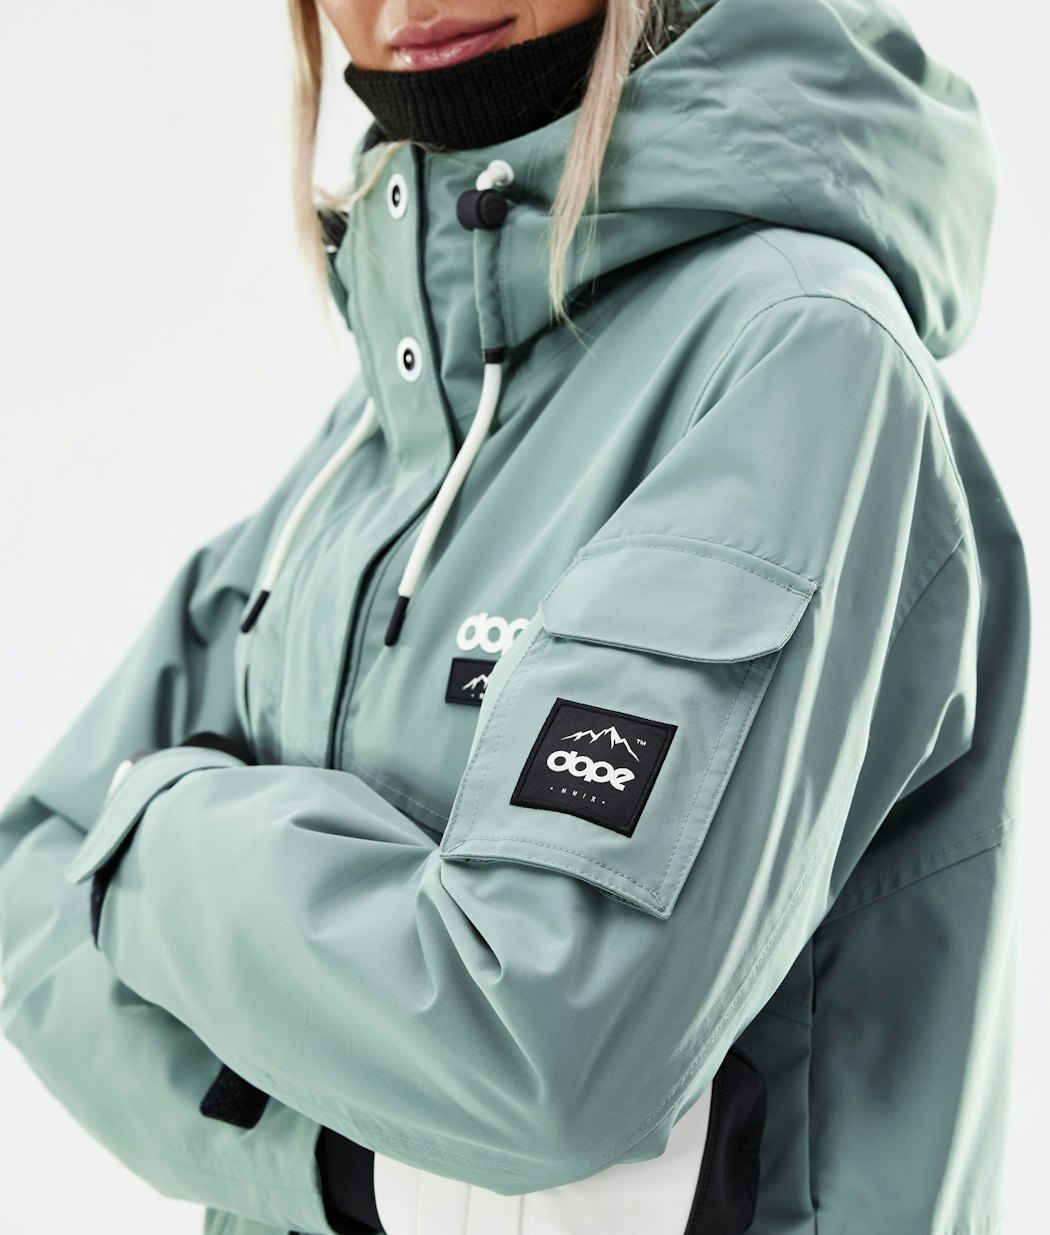 Adept W 2021 Snowboard Jacket Women Faded Green